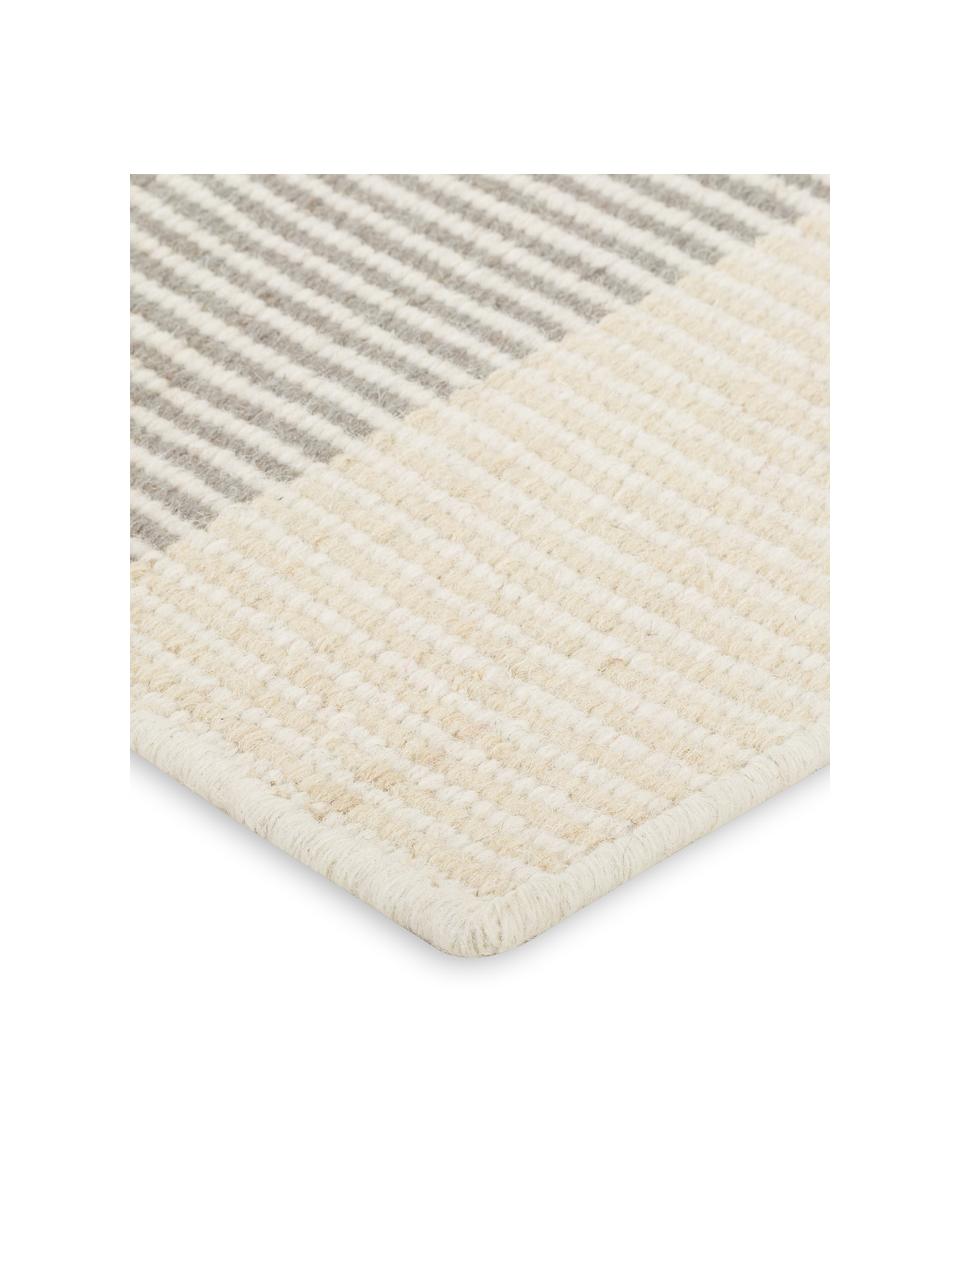 Alfombra de lana artesanal Devise, 100% lana
Las alfombras de lana se pueden aflojar durante las primeras semanas de uso, la pelusa se reduce con el uso diario, Multicolor, An 80 x L 280 cm